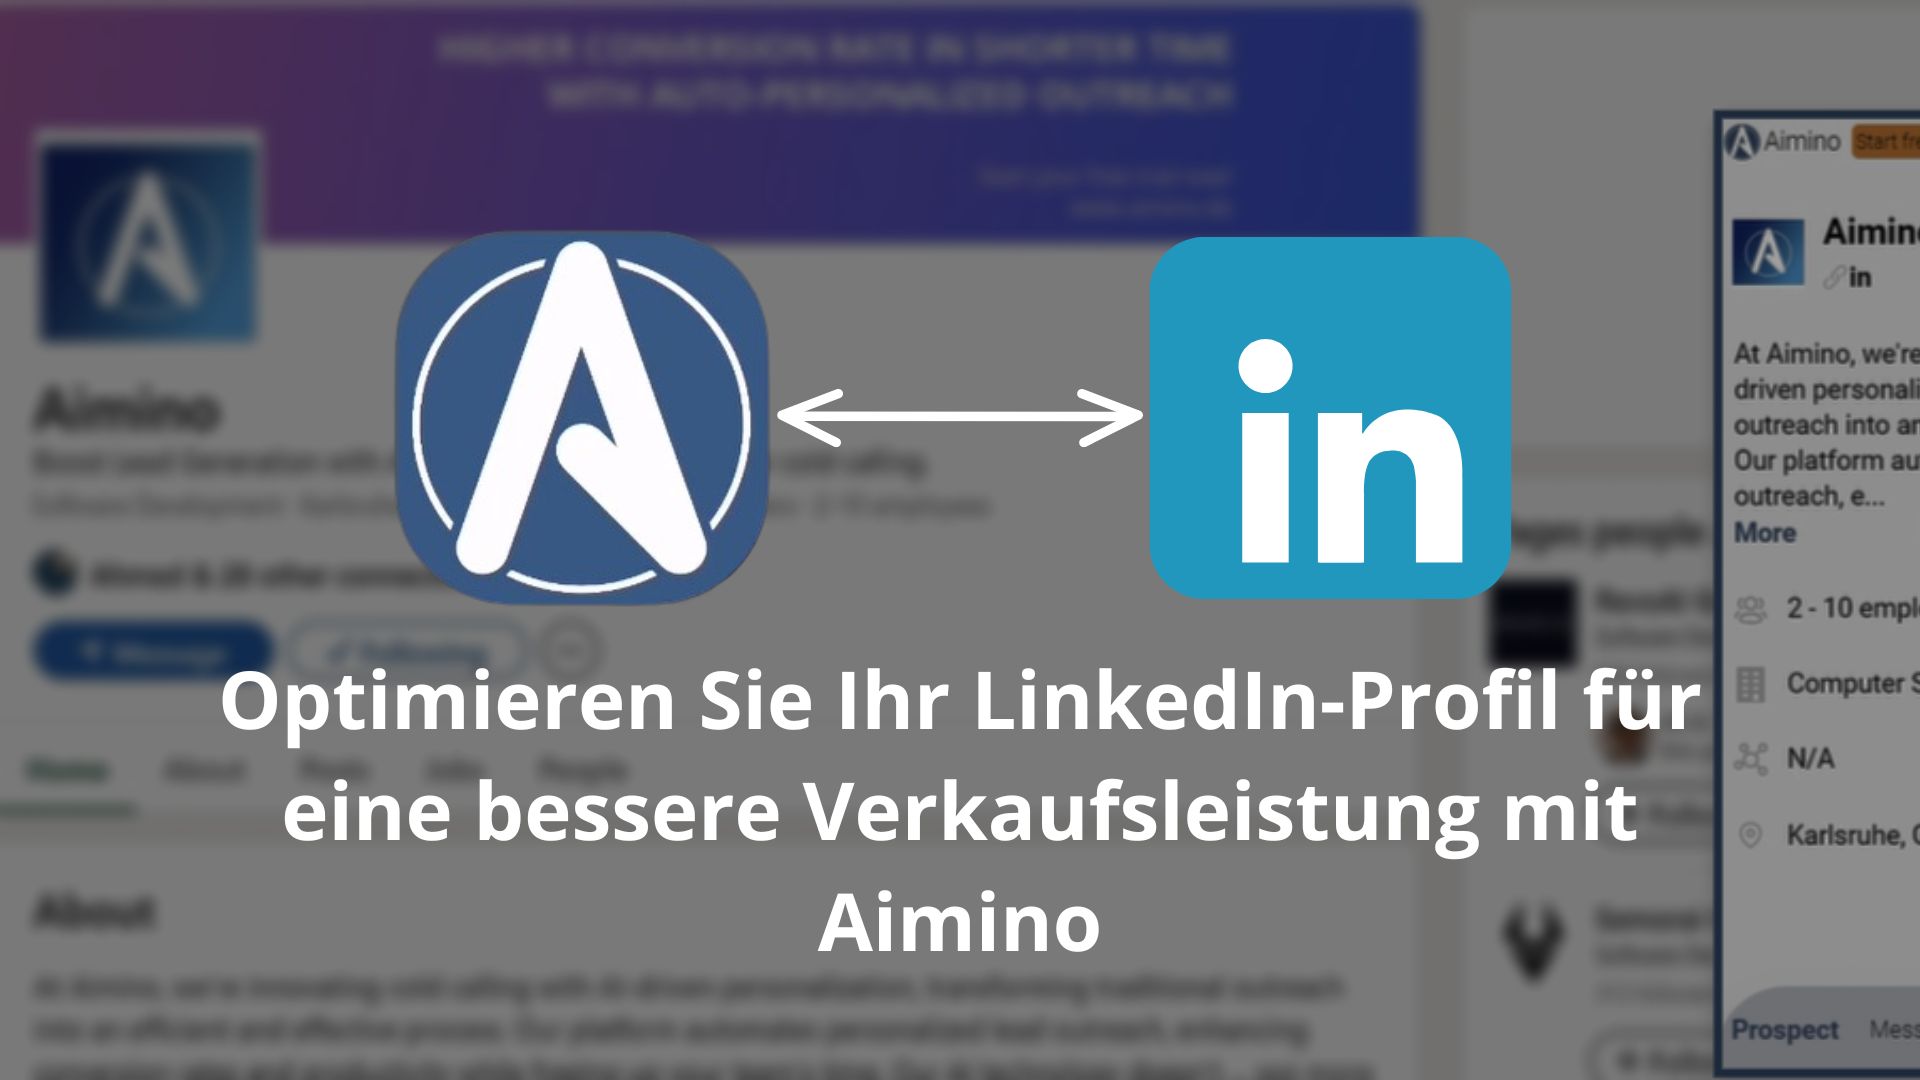 Optimieren Sie Ihr LinkedIn-Profil für eine bessere Verkaufsleistung mit Aimino